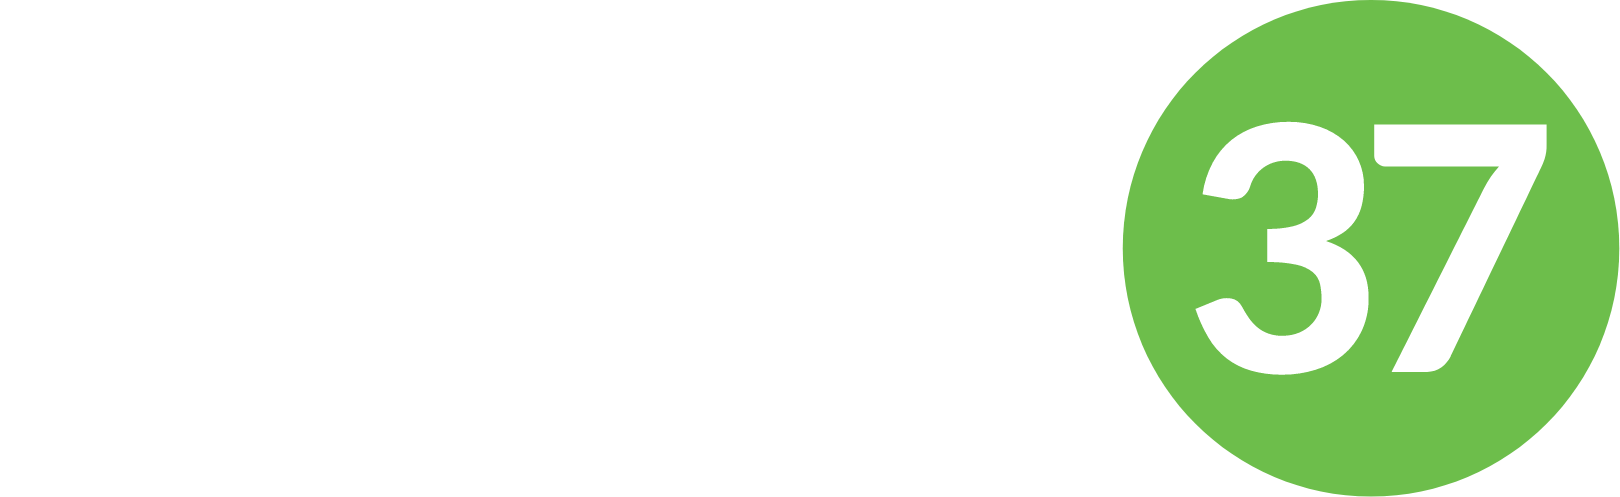 Science 37 logo large for dark backgrounds (transparent PNG)